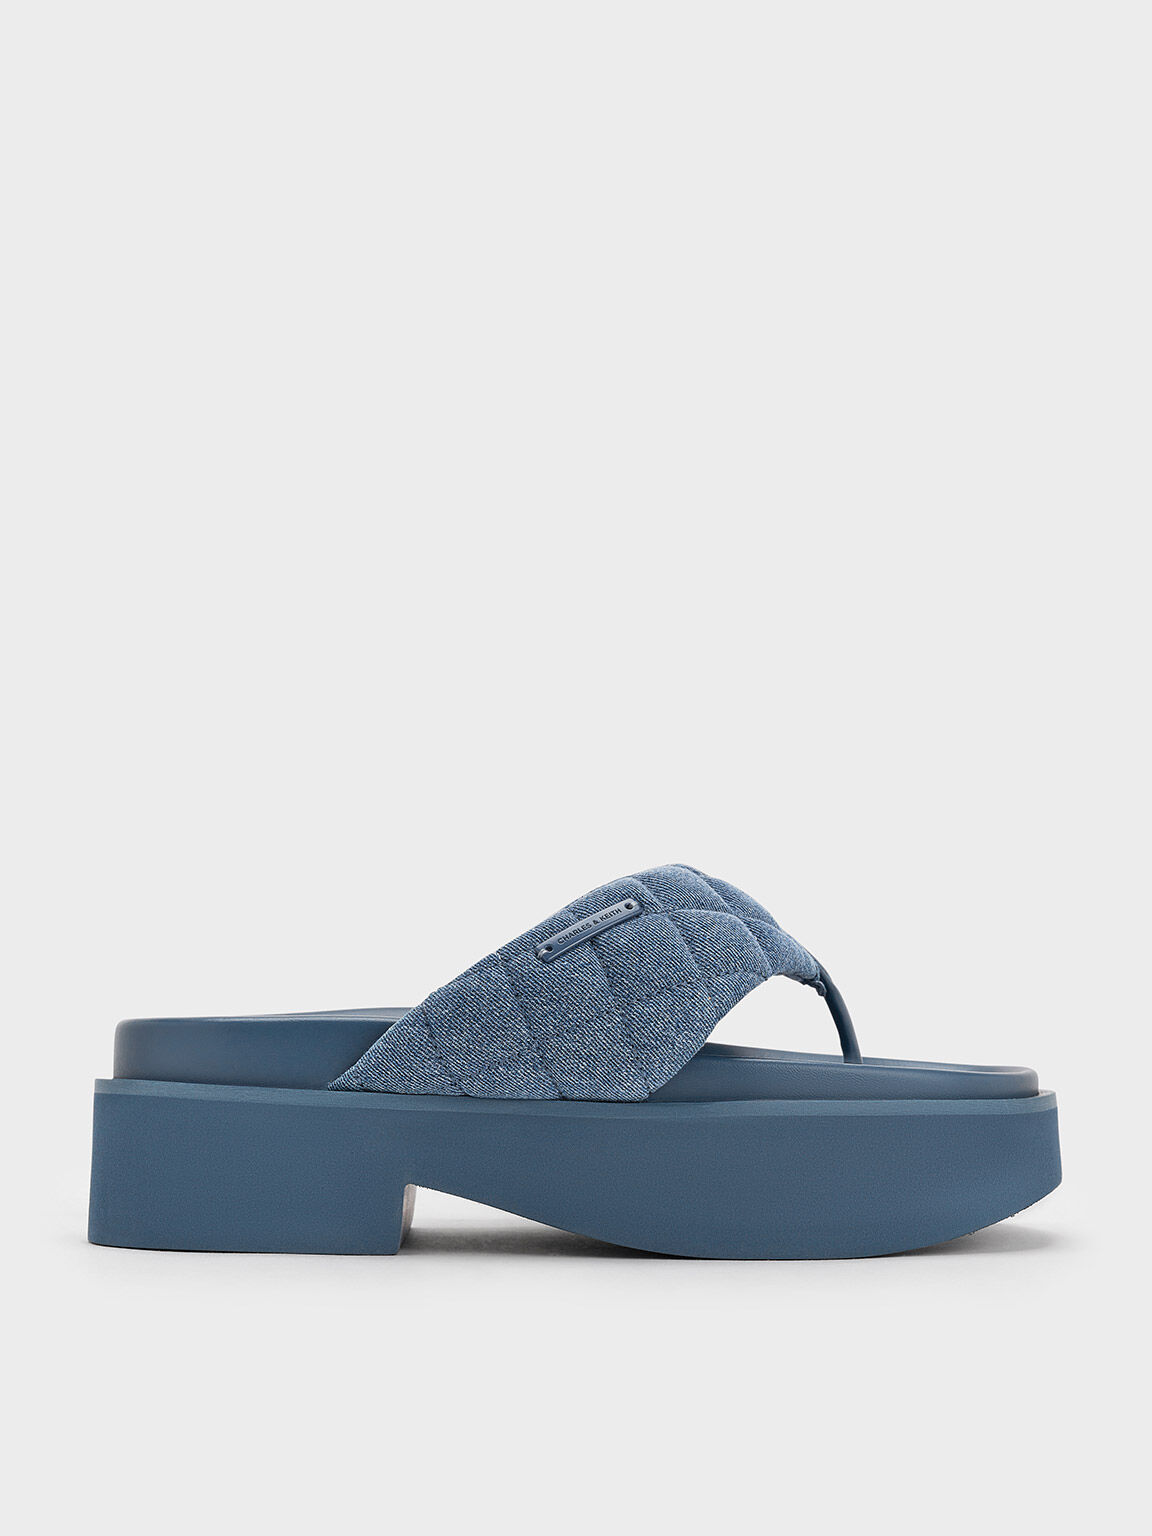 Sandal Thong Platform V-Strap Denim, Denim Blue, hi-res